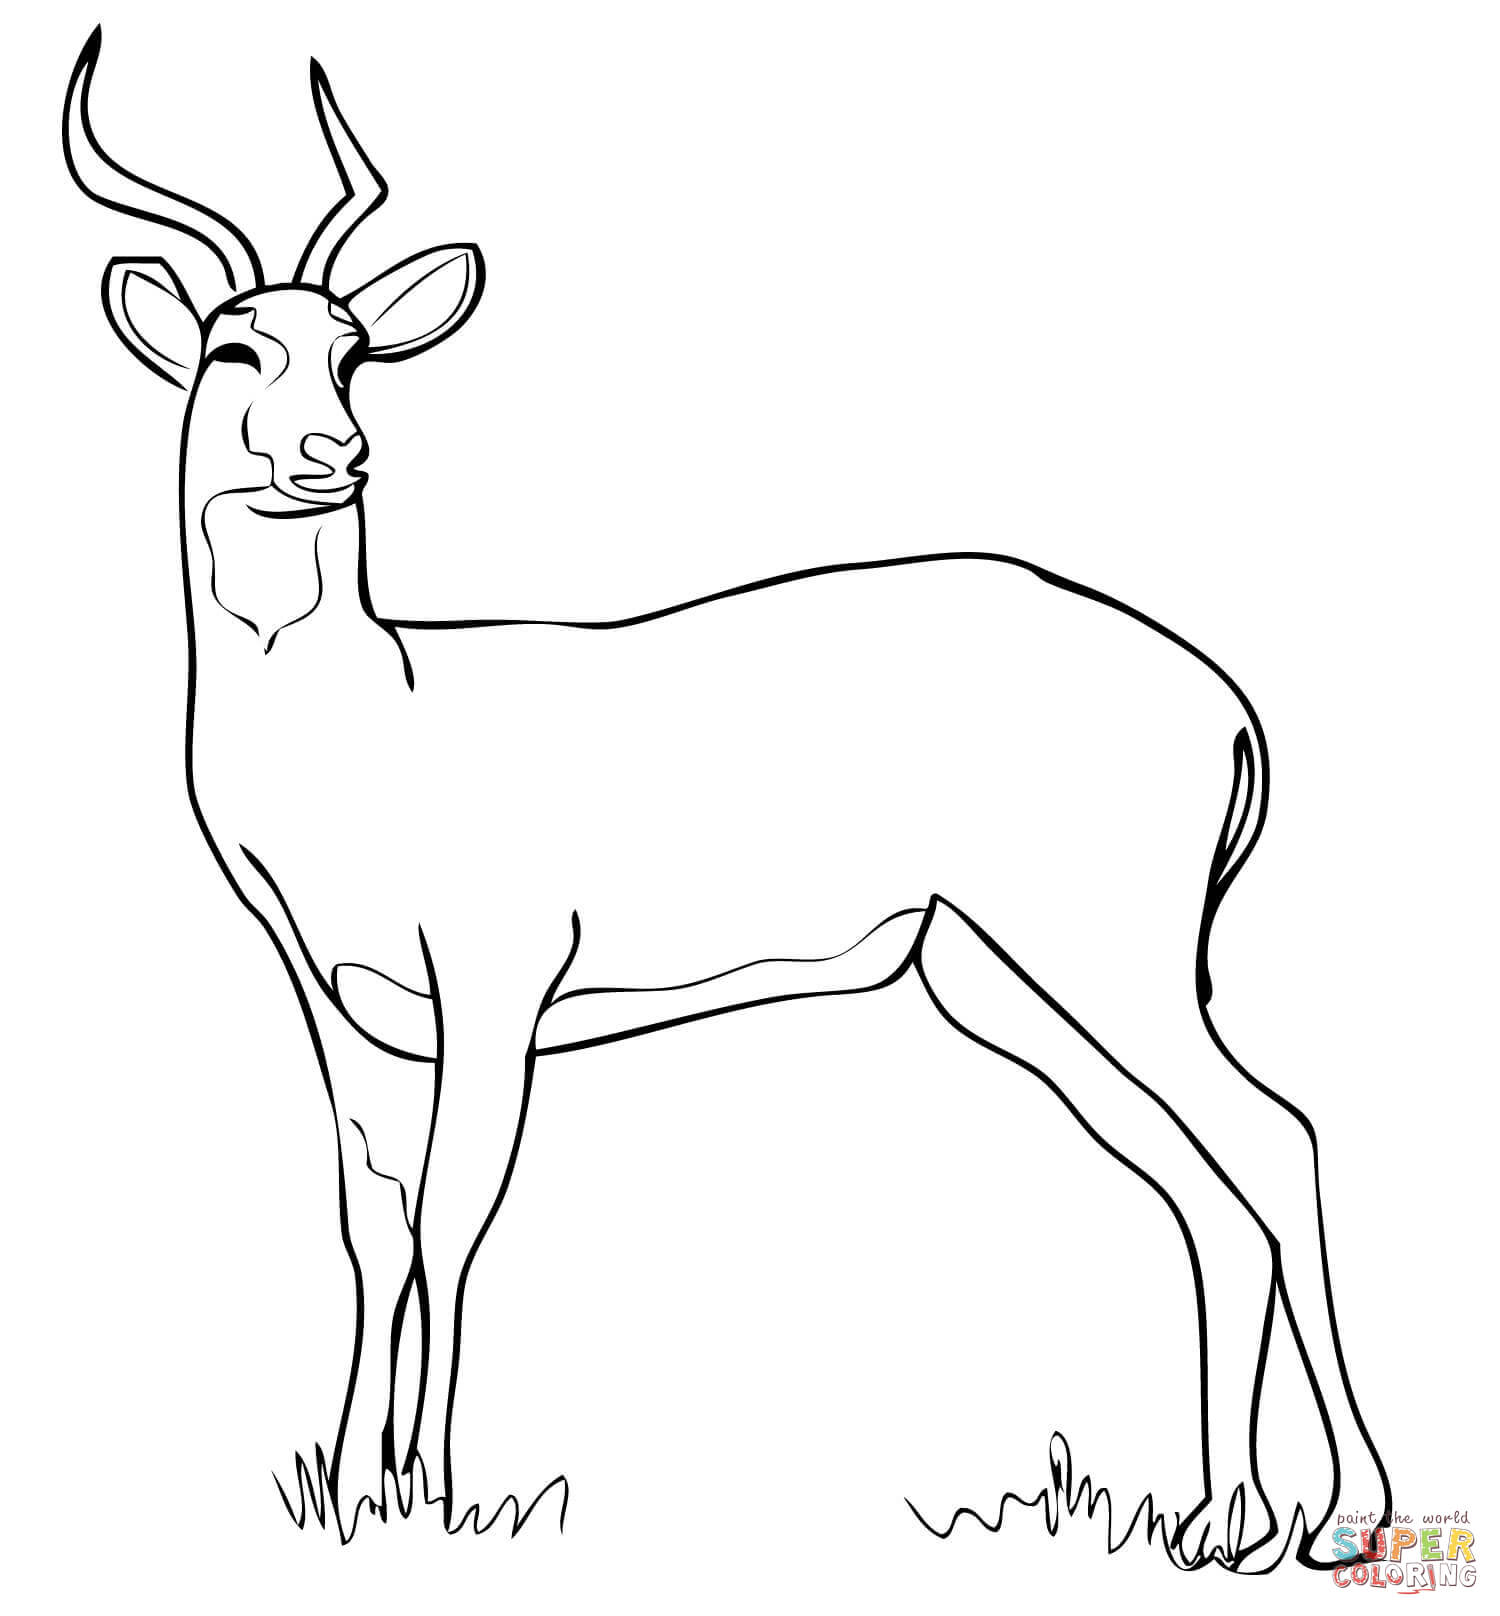 Uganda Kob Antelope Coloring Page   Free Printable Coloring Pages